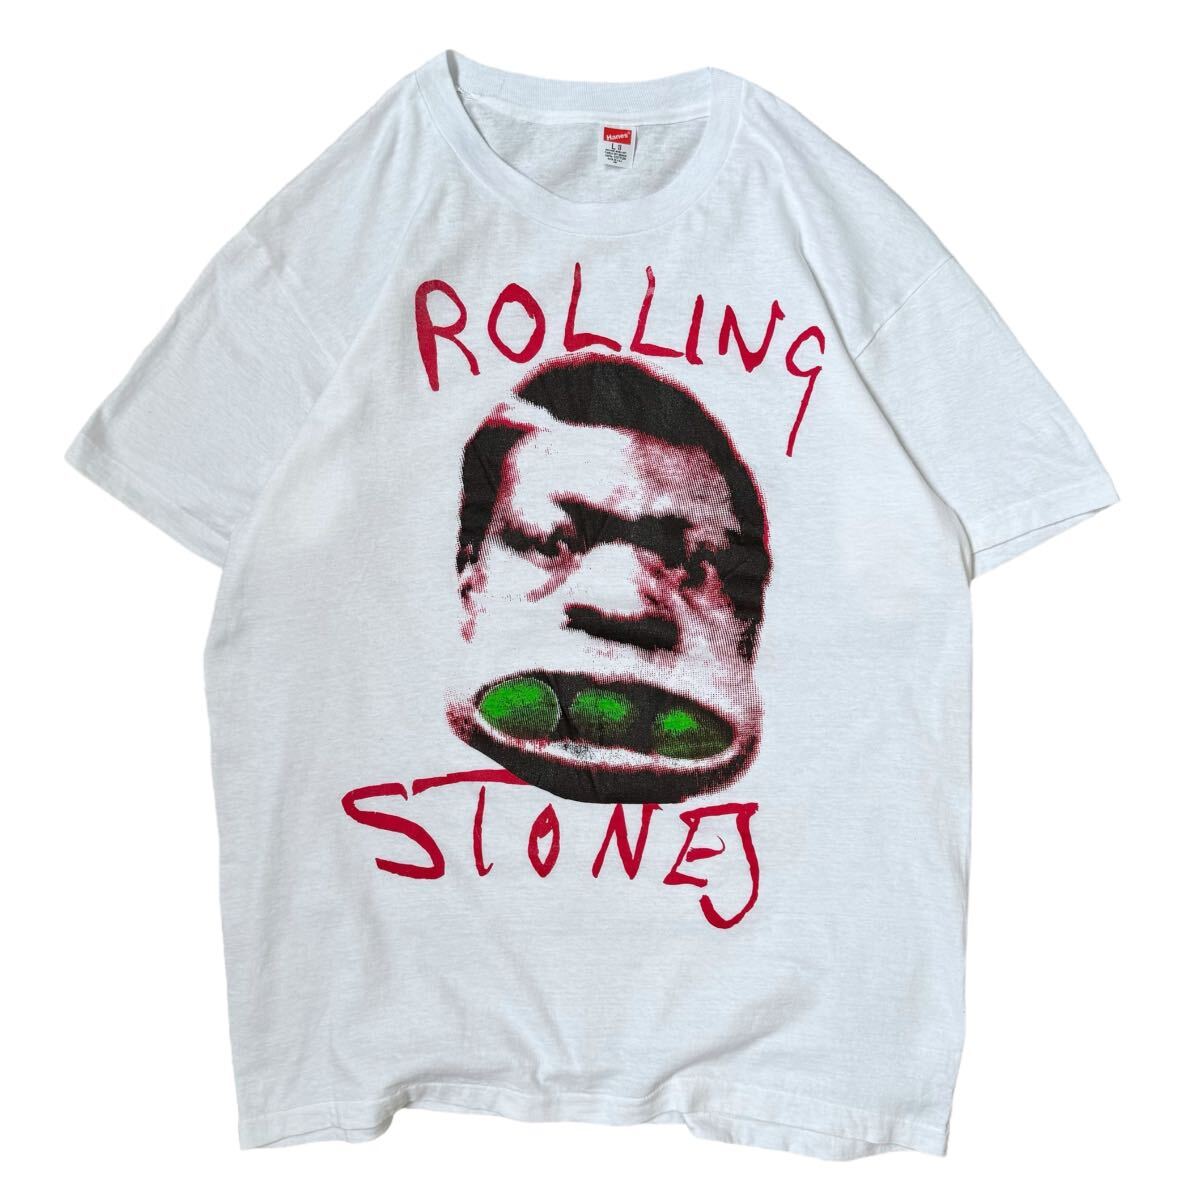 The Rolling Stones ローリングストーンズ Tシャツ バンドT